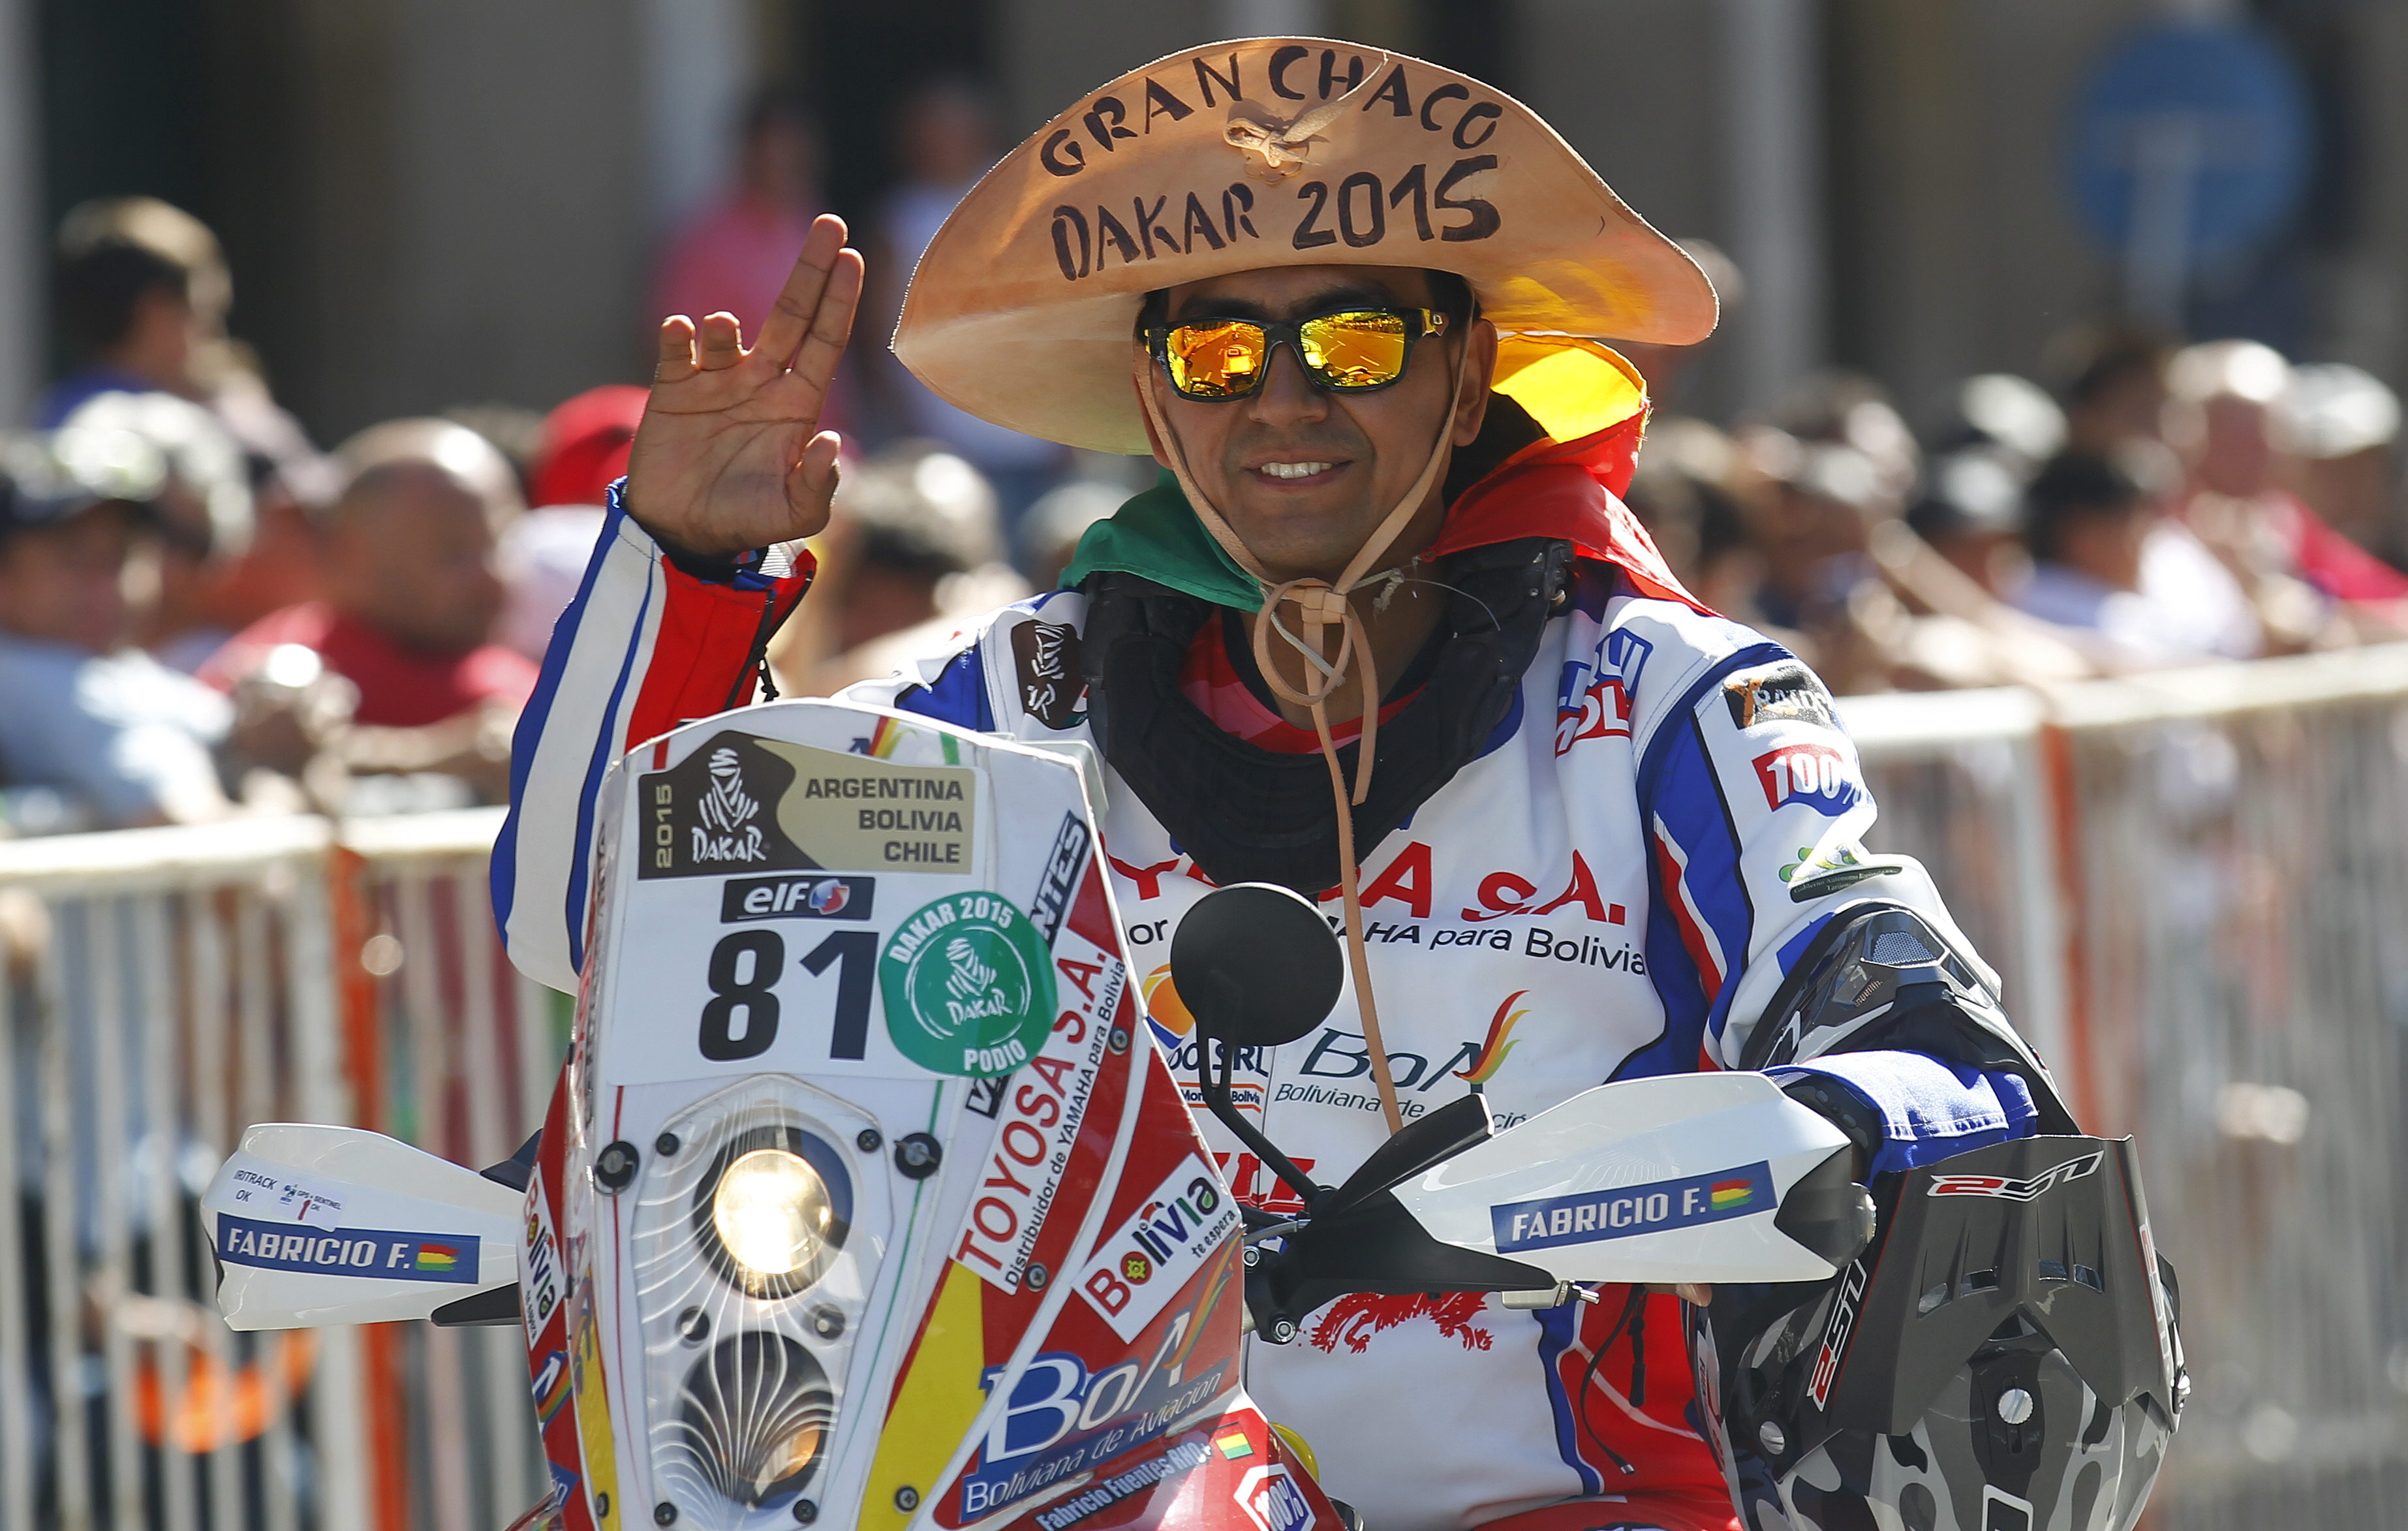 El boliviano Fabricio Fuentes destacó por particular vestimenta durante el evento